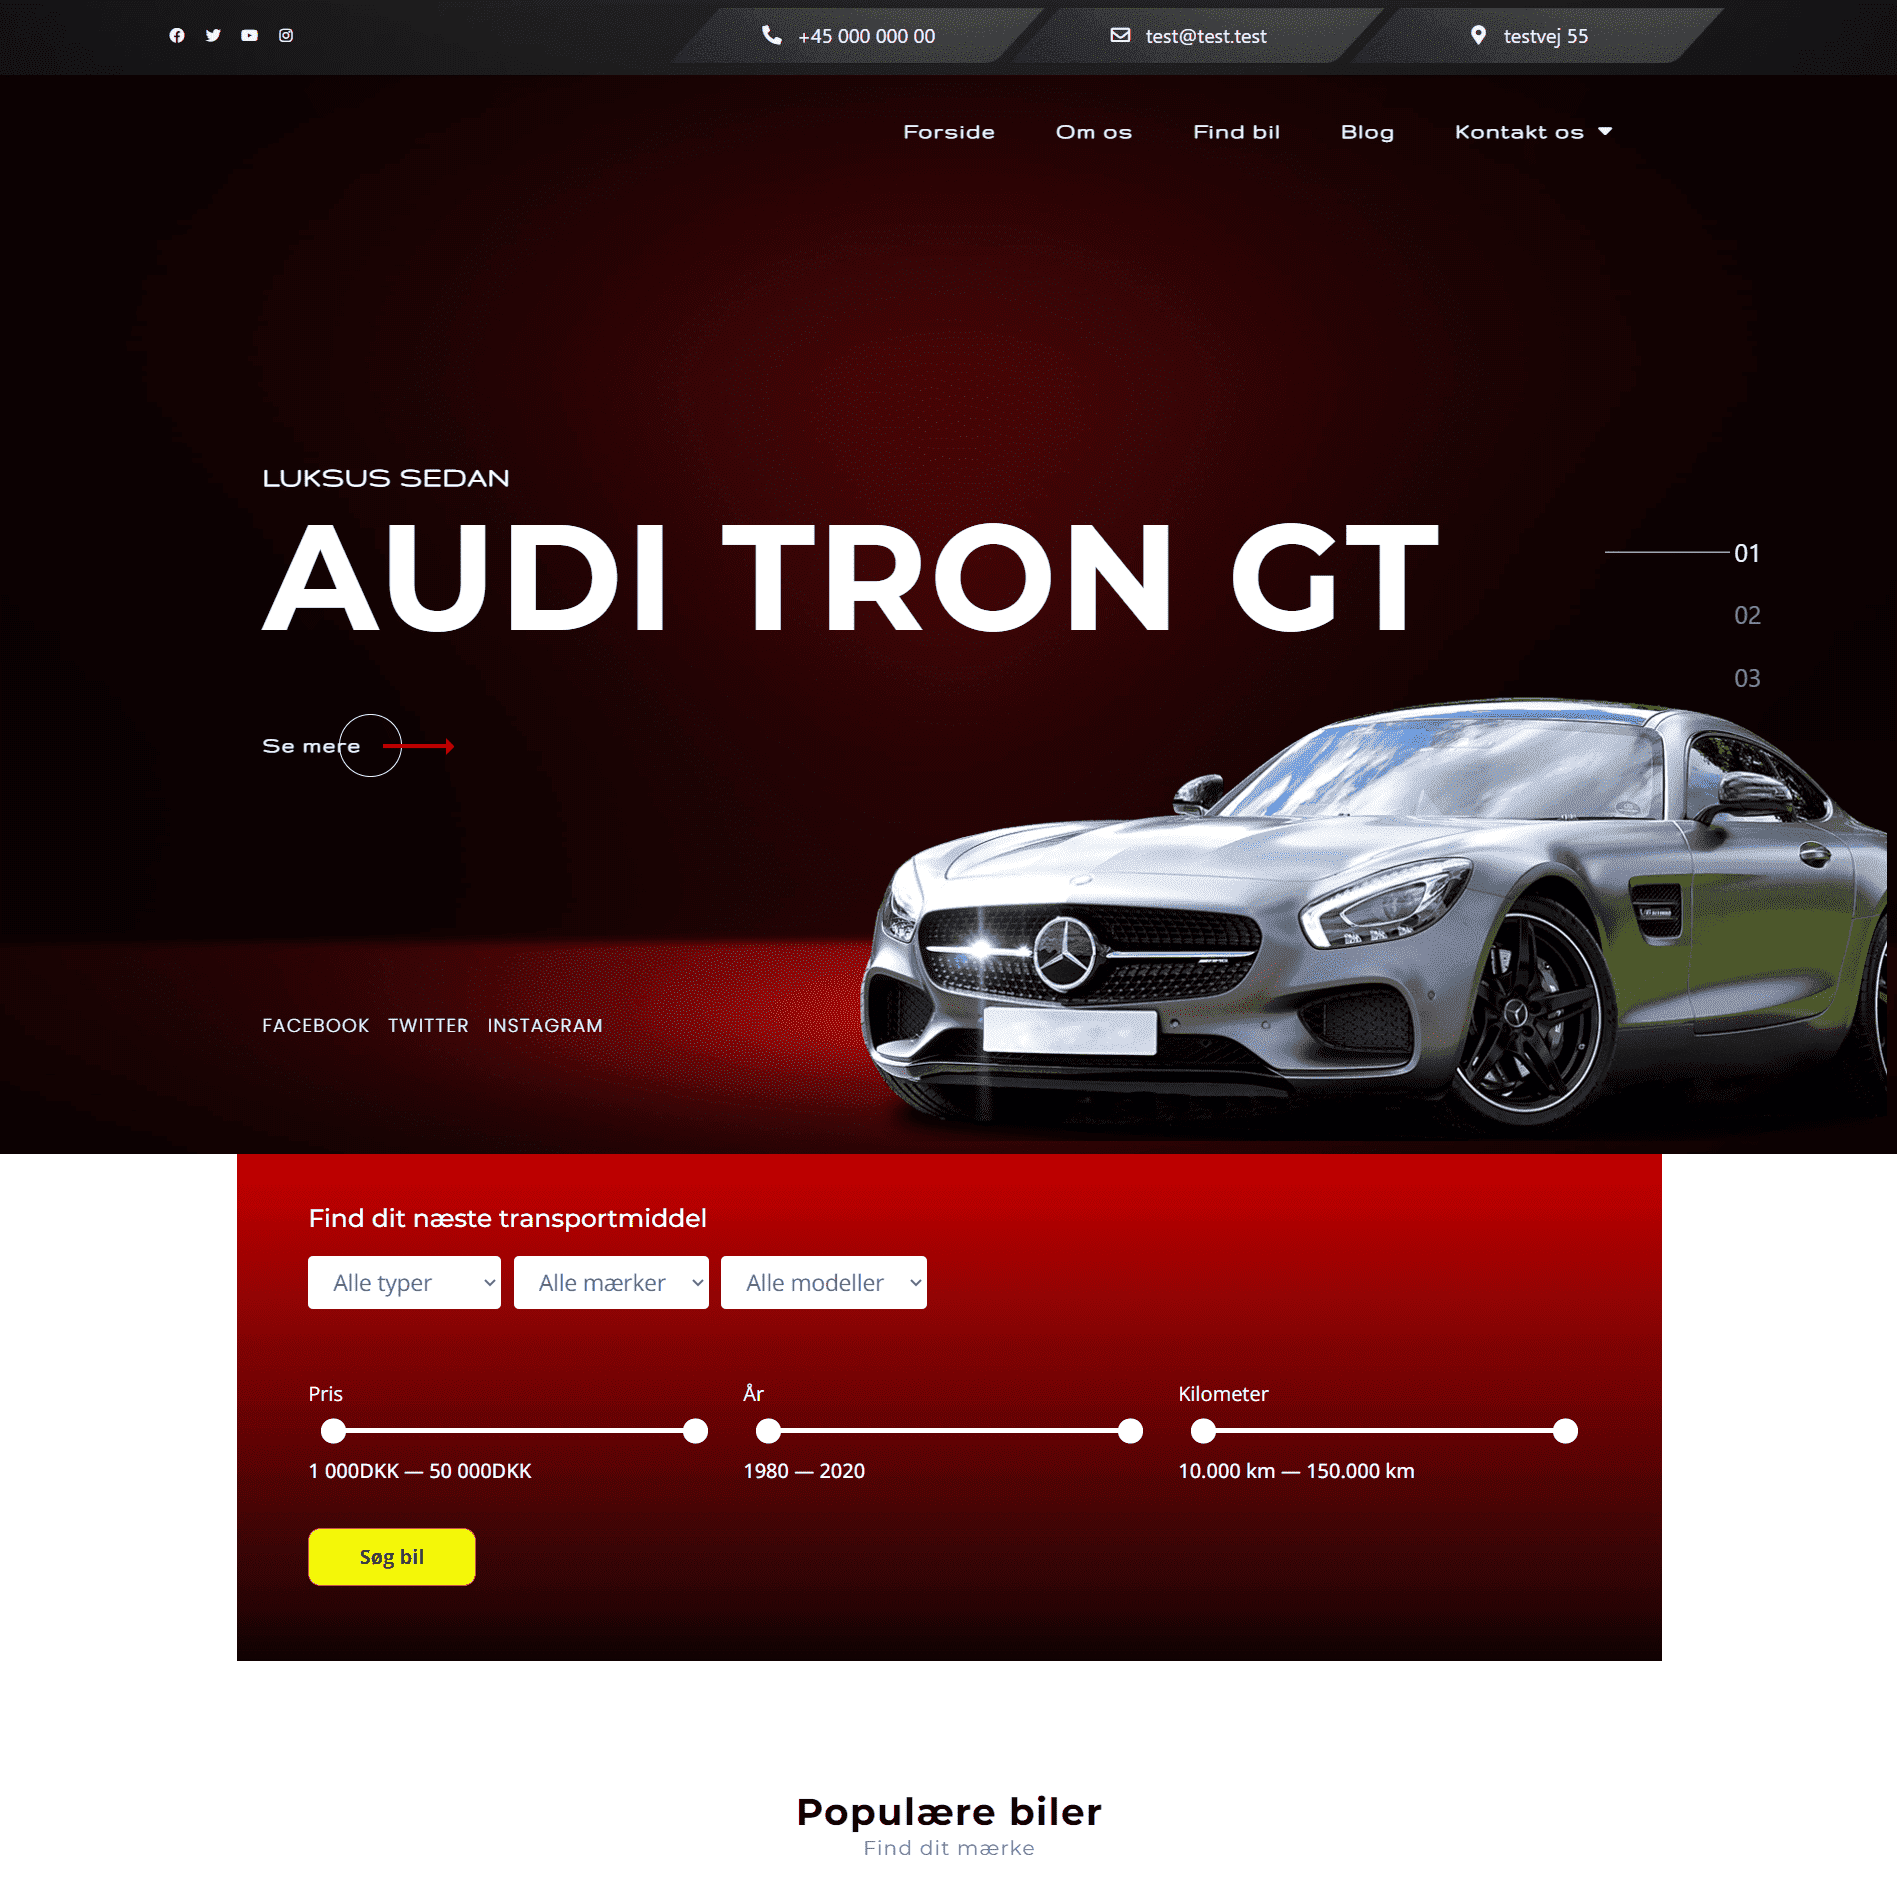 Sælg biler med en professionel hjemmeside